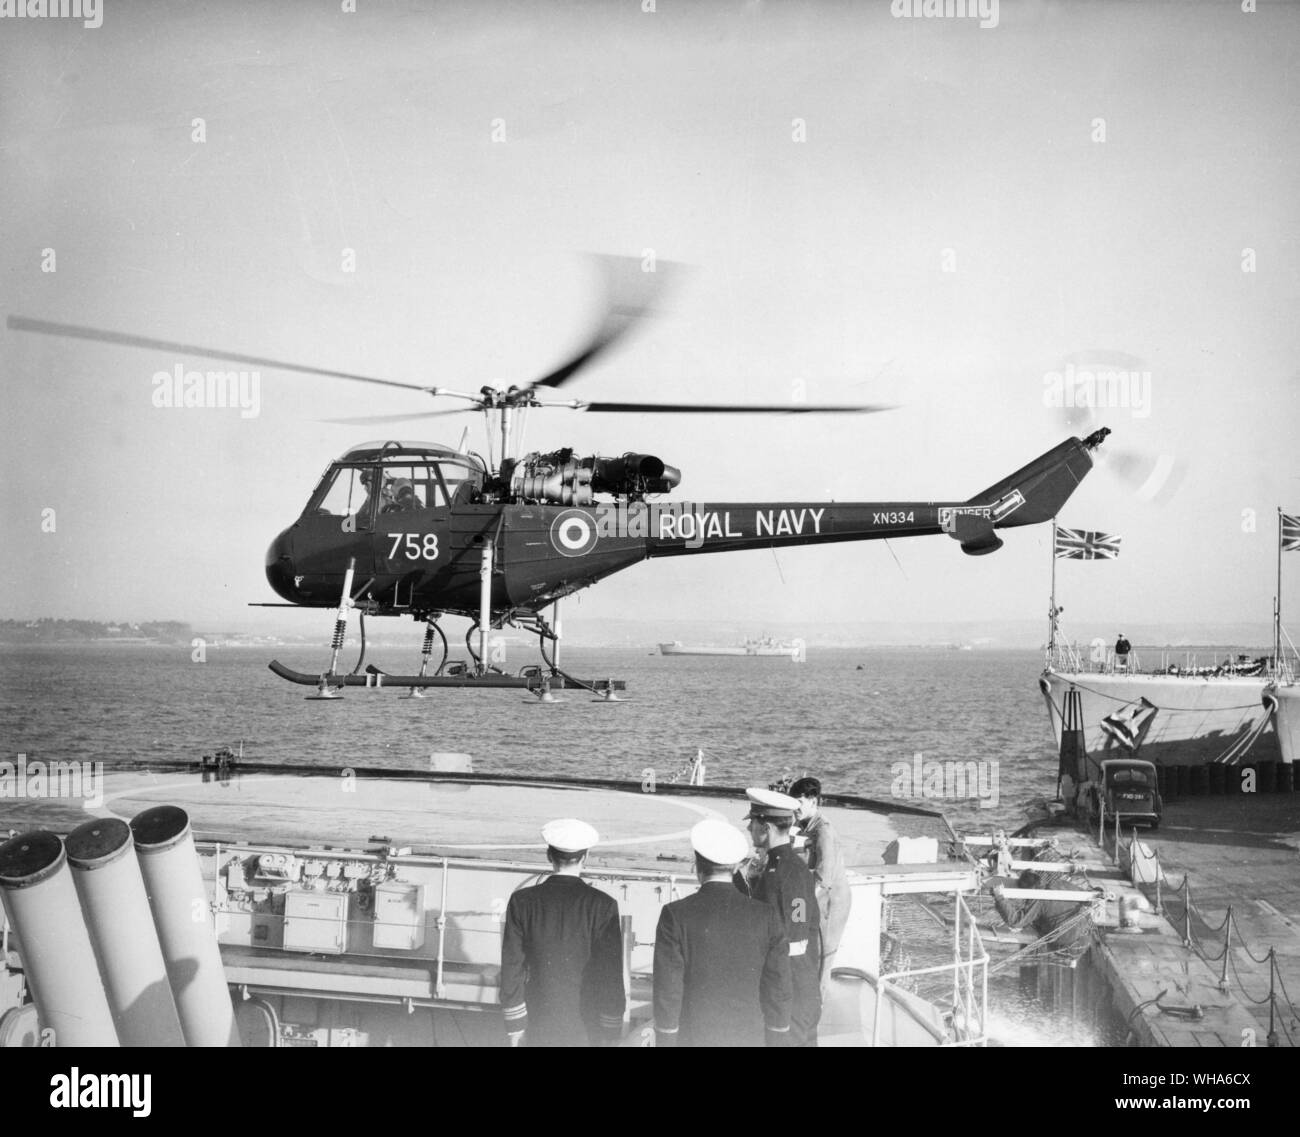 Pour la première fois un hélicoptère seront transportées comme partie intégrante d'un armement frégates quand le HMS Ashanti, premier de la nouvelle classe de frégates à usage général, embarque un Westland Wasp pour fonctionner dans un rôle anti-sous-marine. Les images montrent la guêpe faisant son premier atterrissage sur Ashanti petite cabine de pilotage durant les essais au large de Portland Banque D'Images